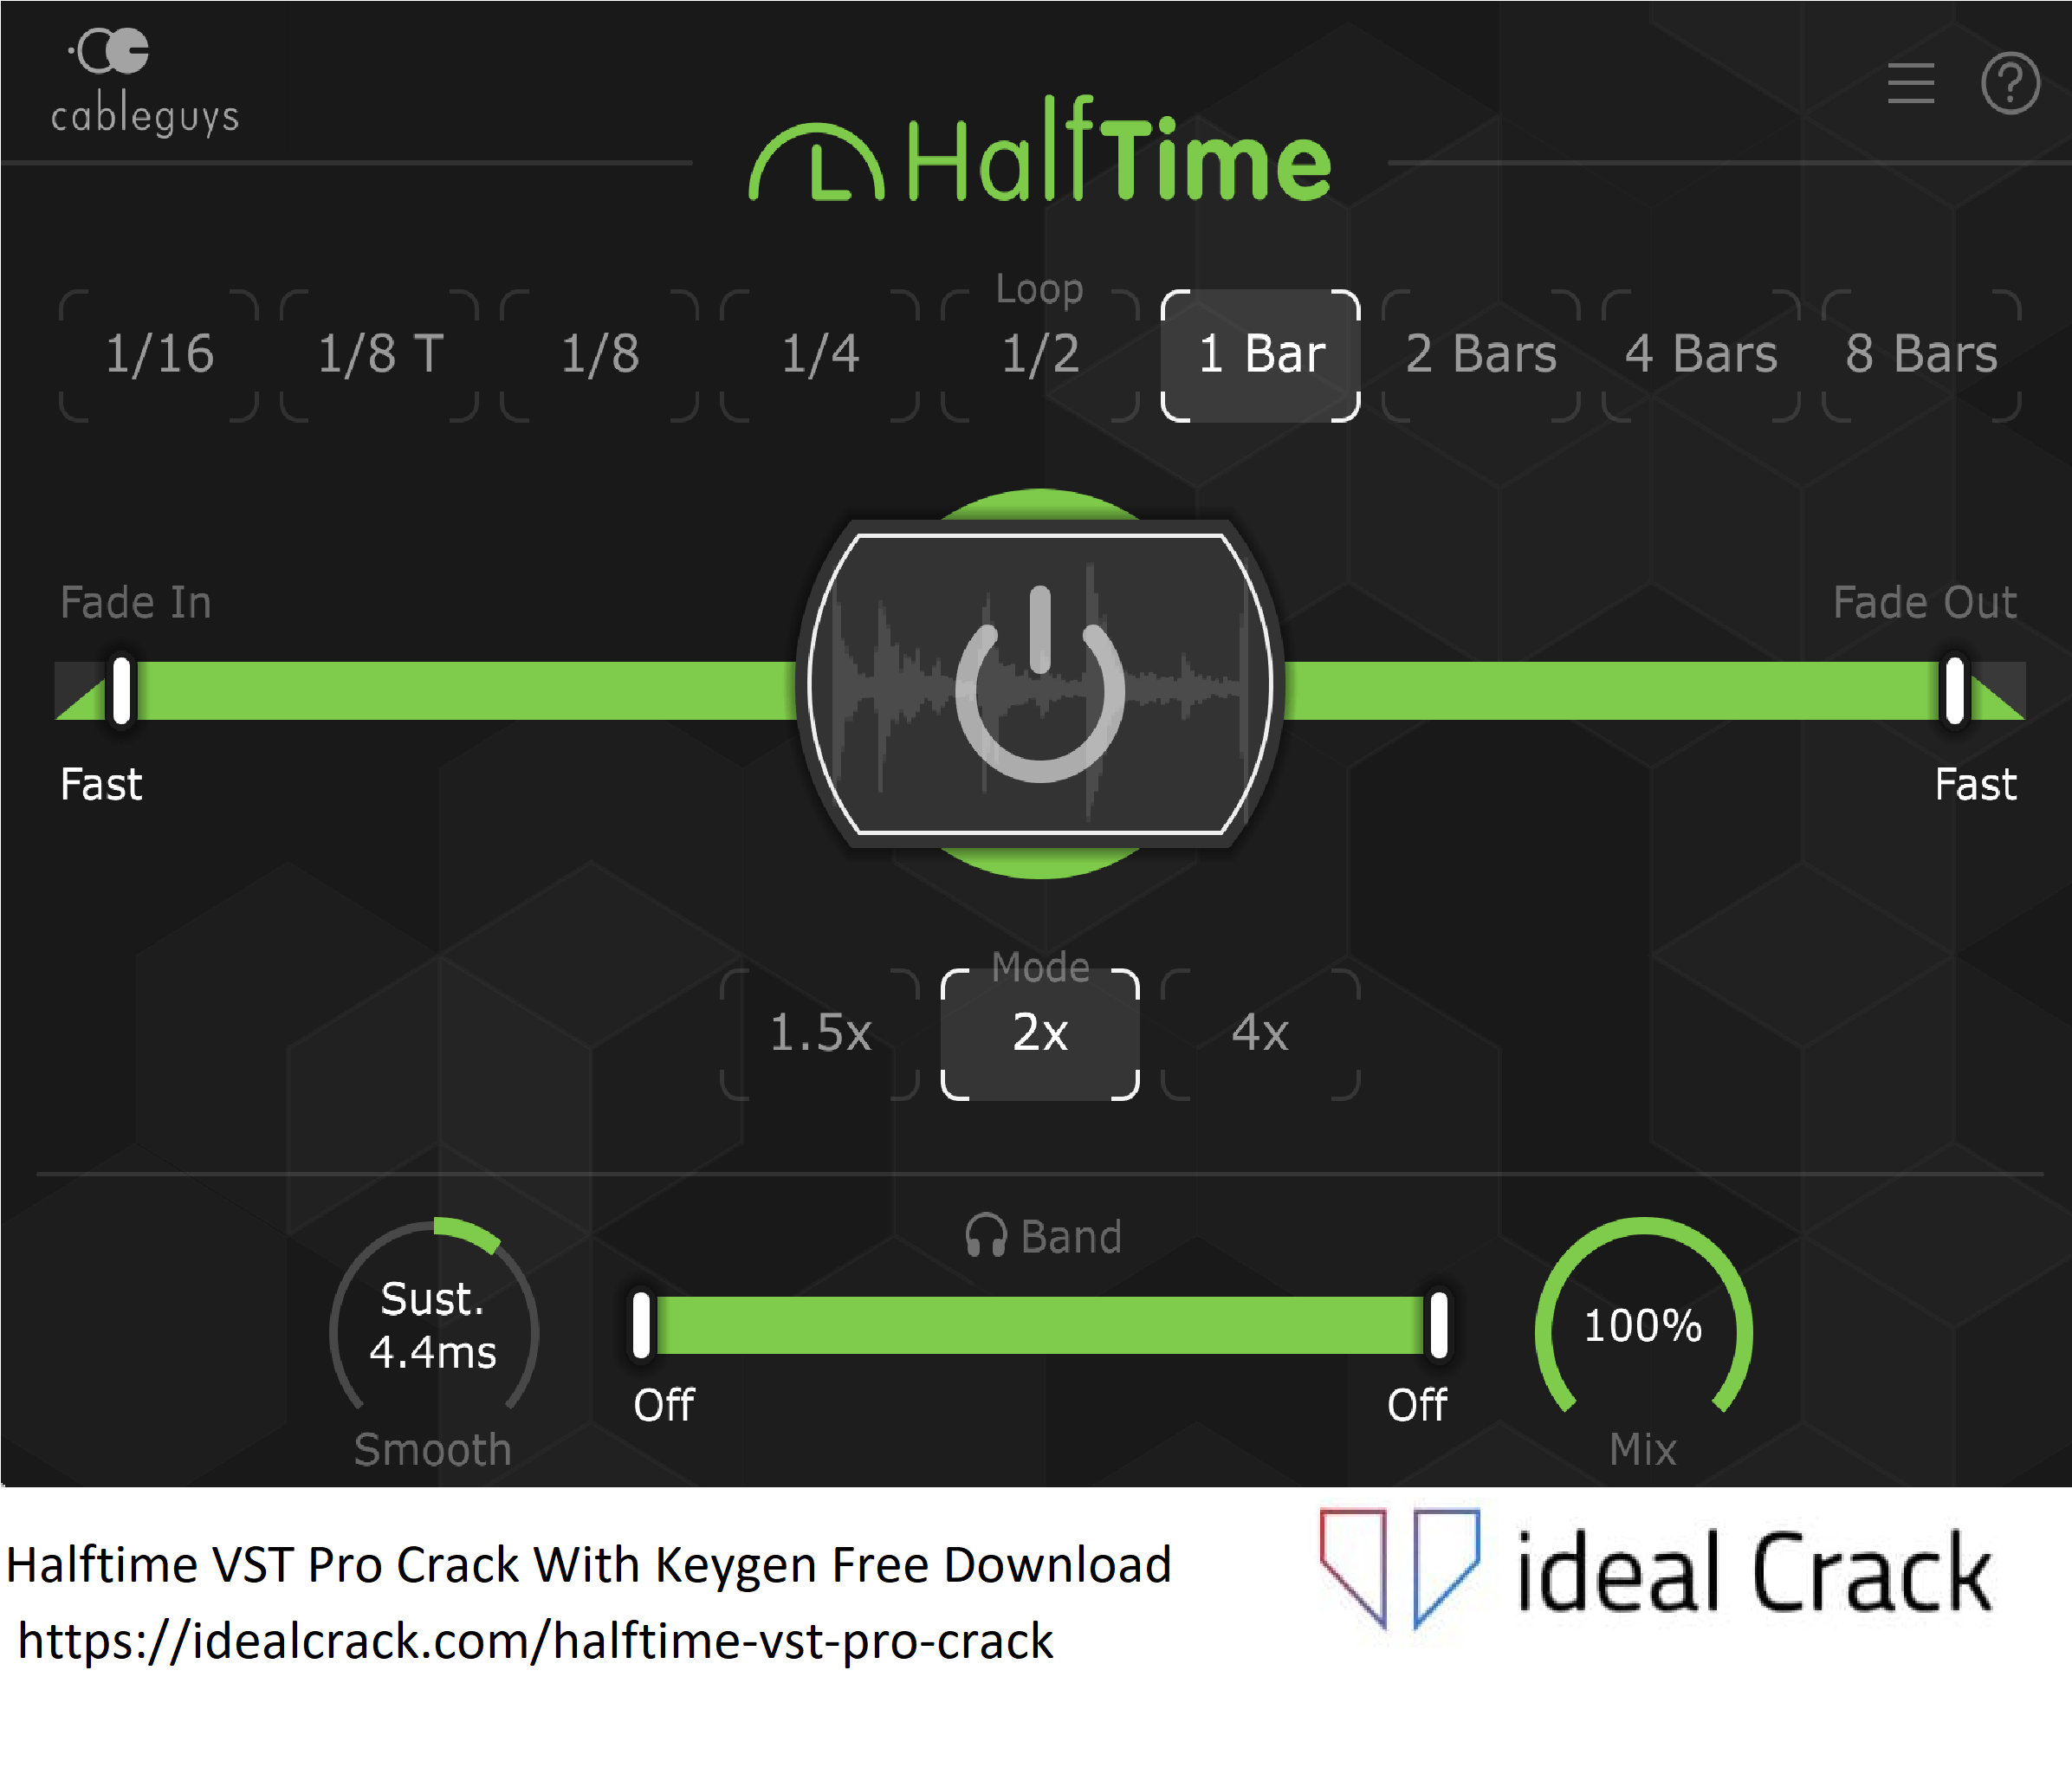 Halftime VST Pro Crack